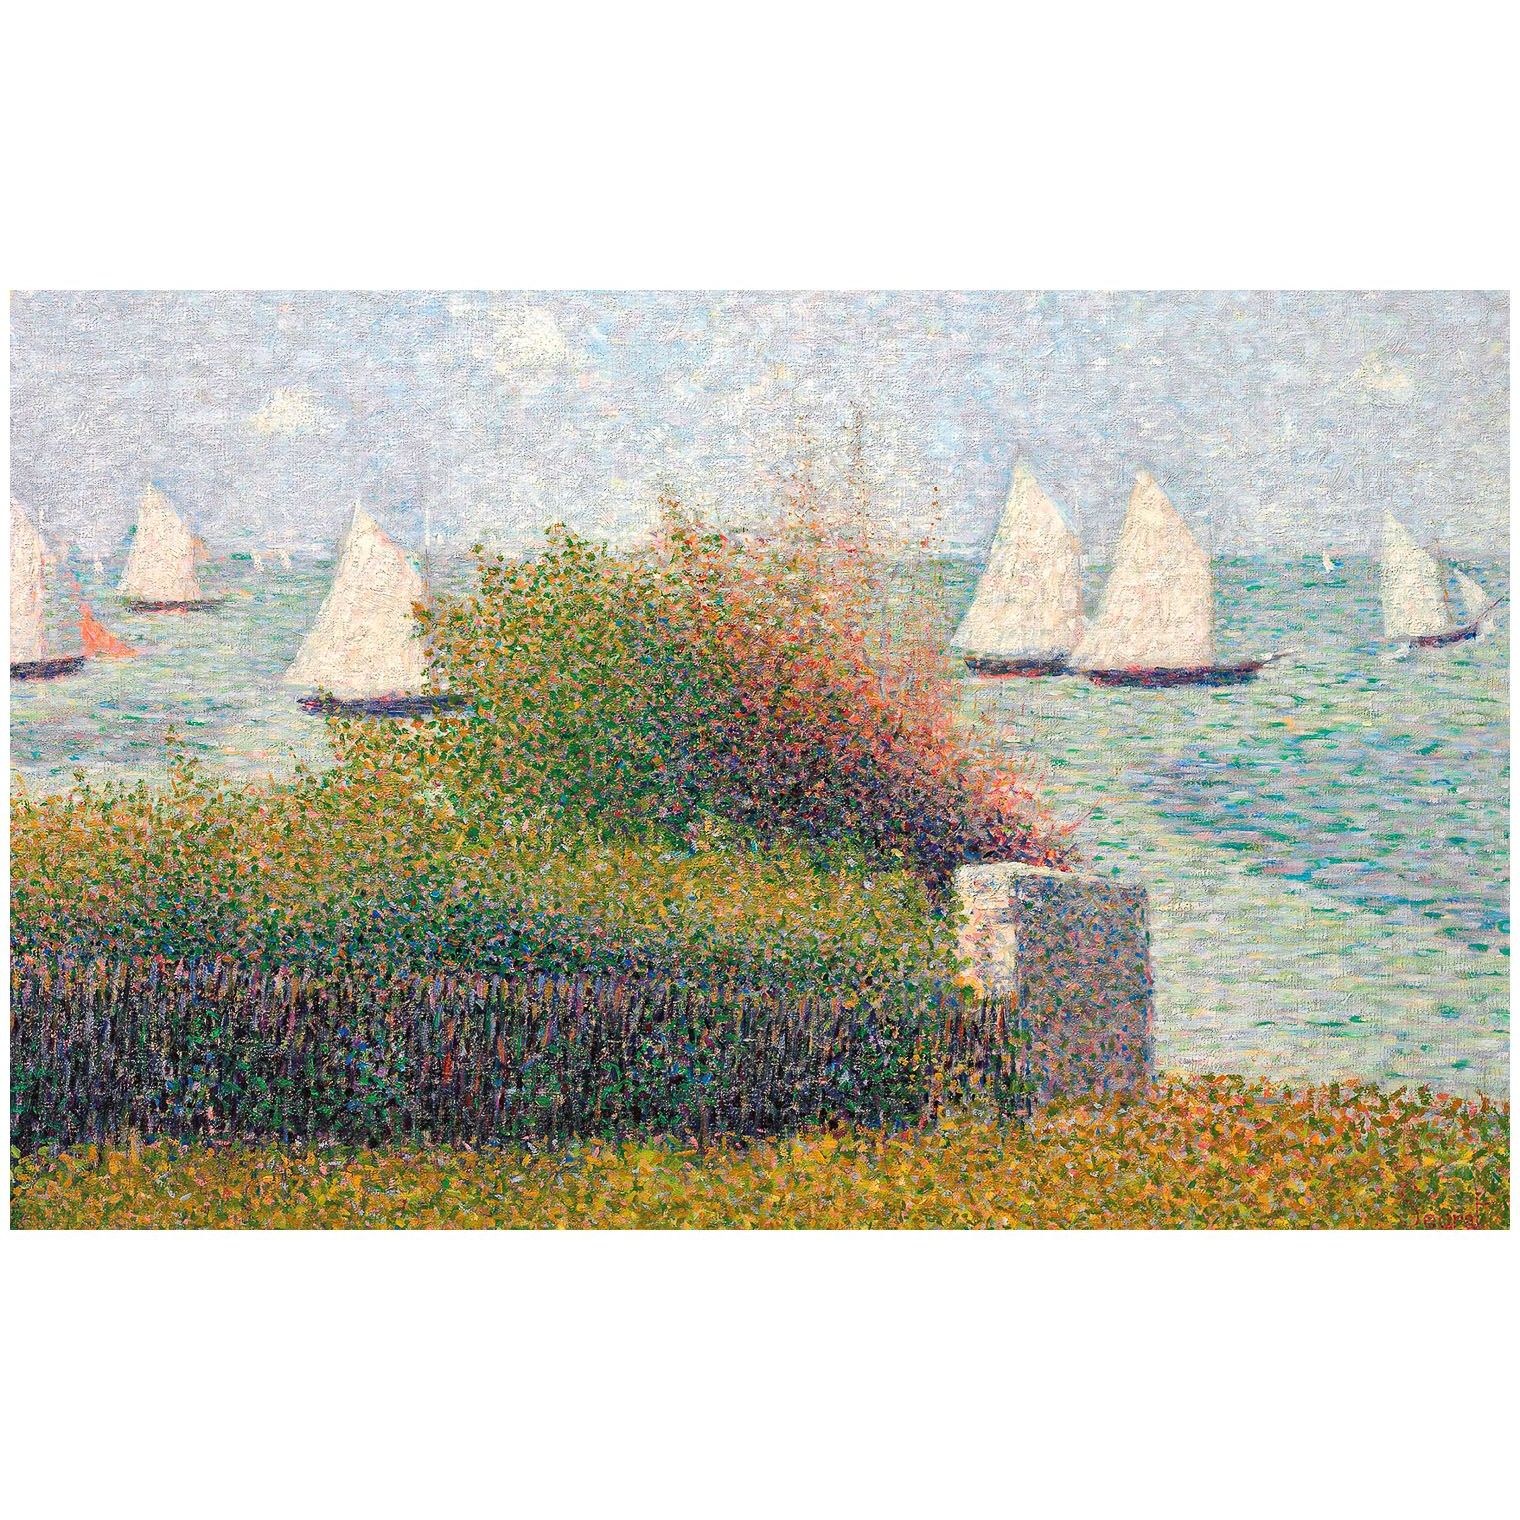 Georges Seurat. Le port de Grandcamp. 1885. Private collection